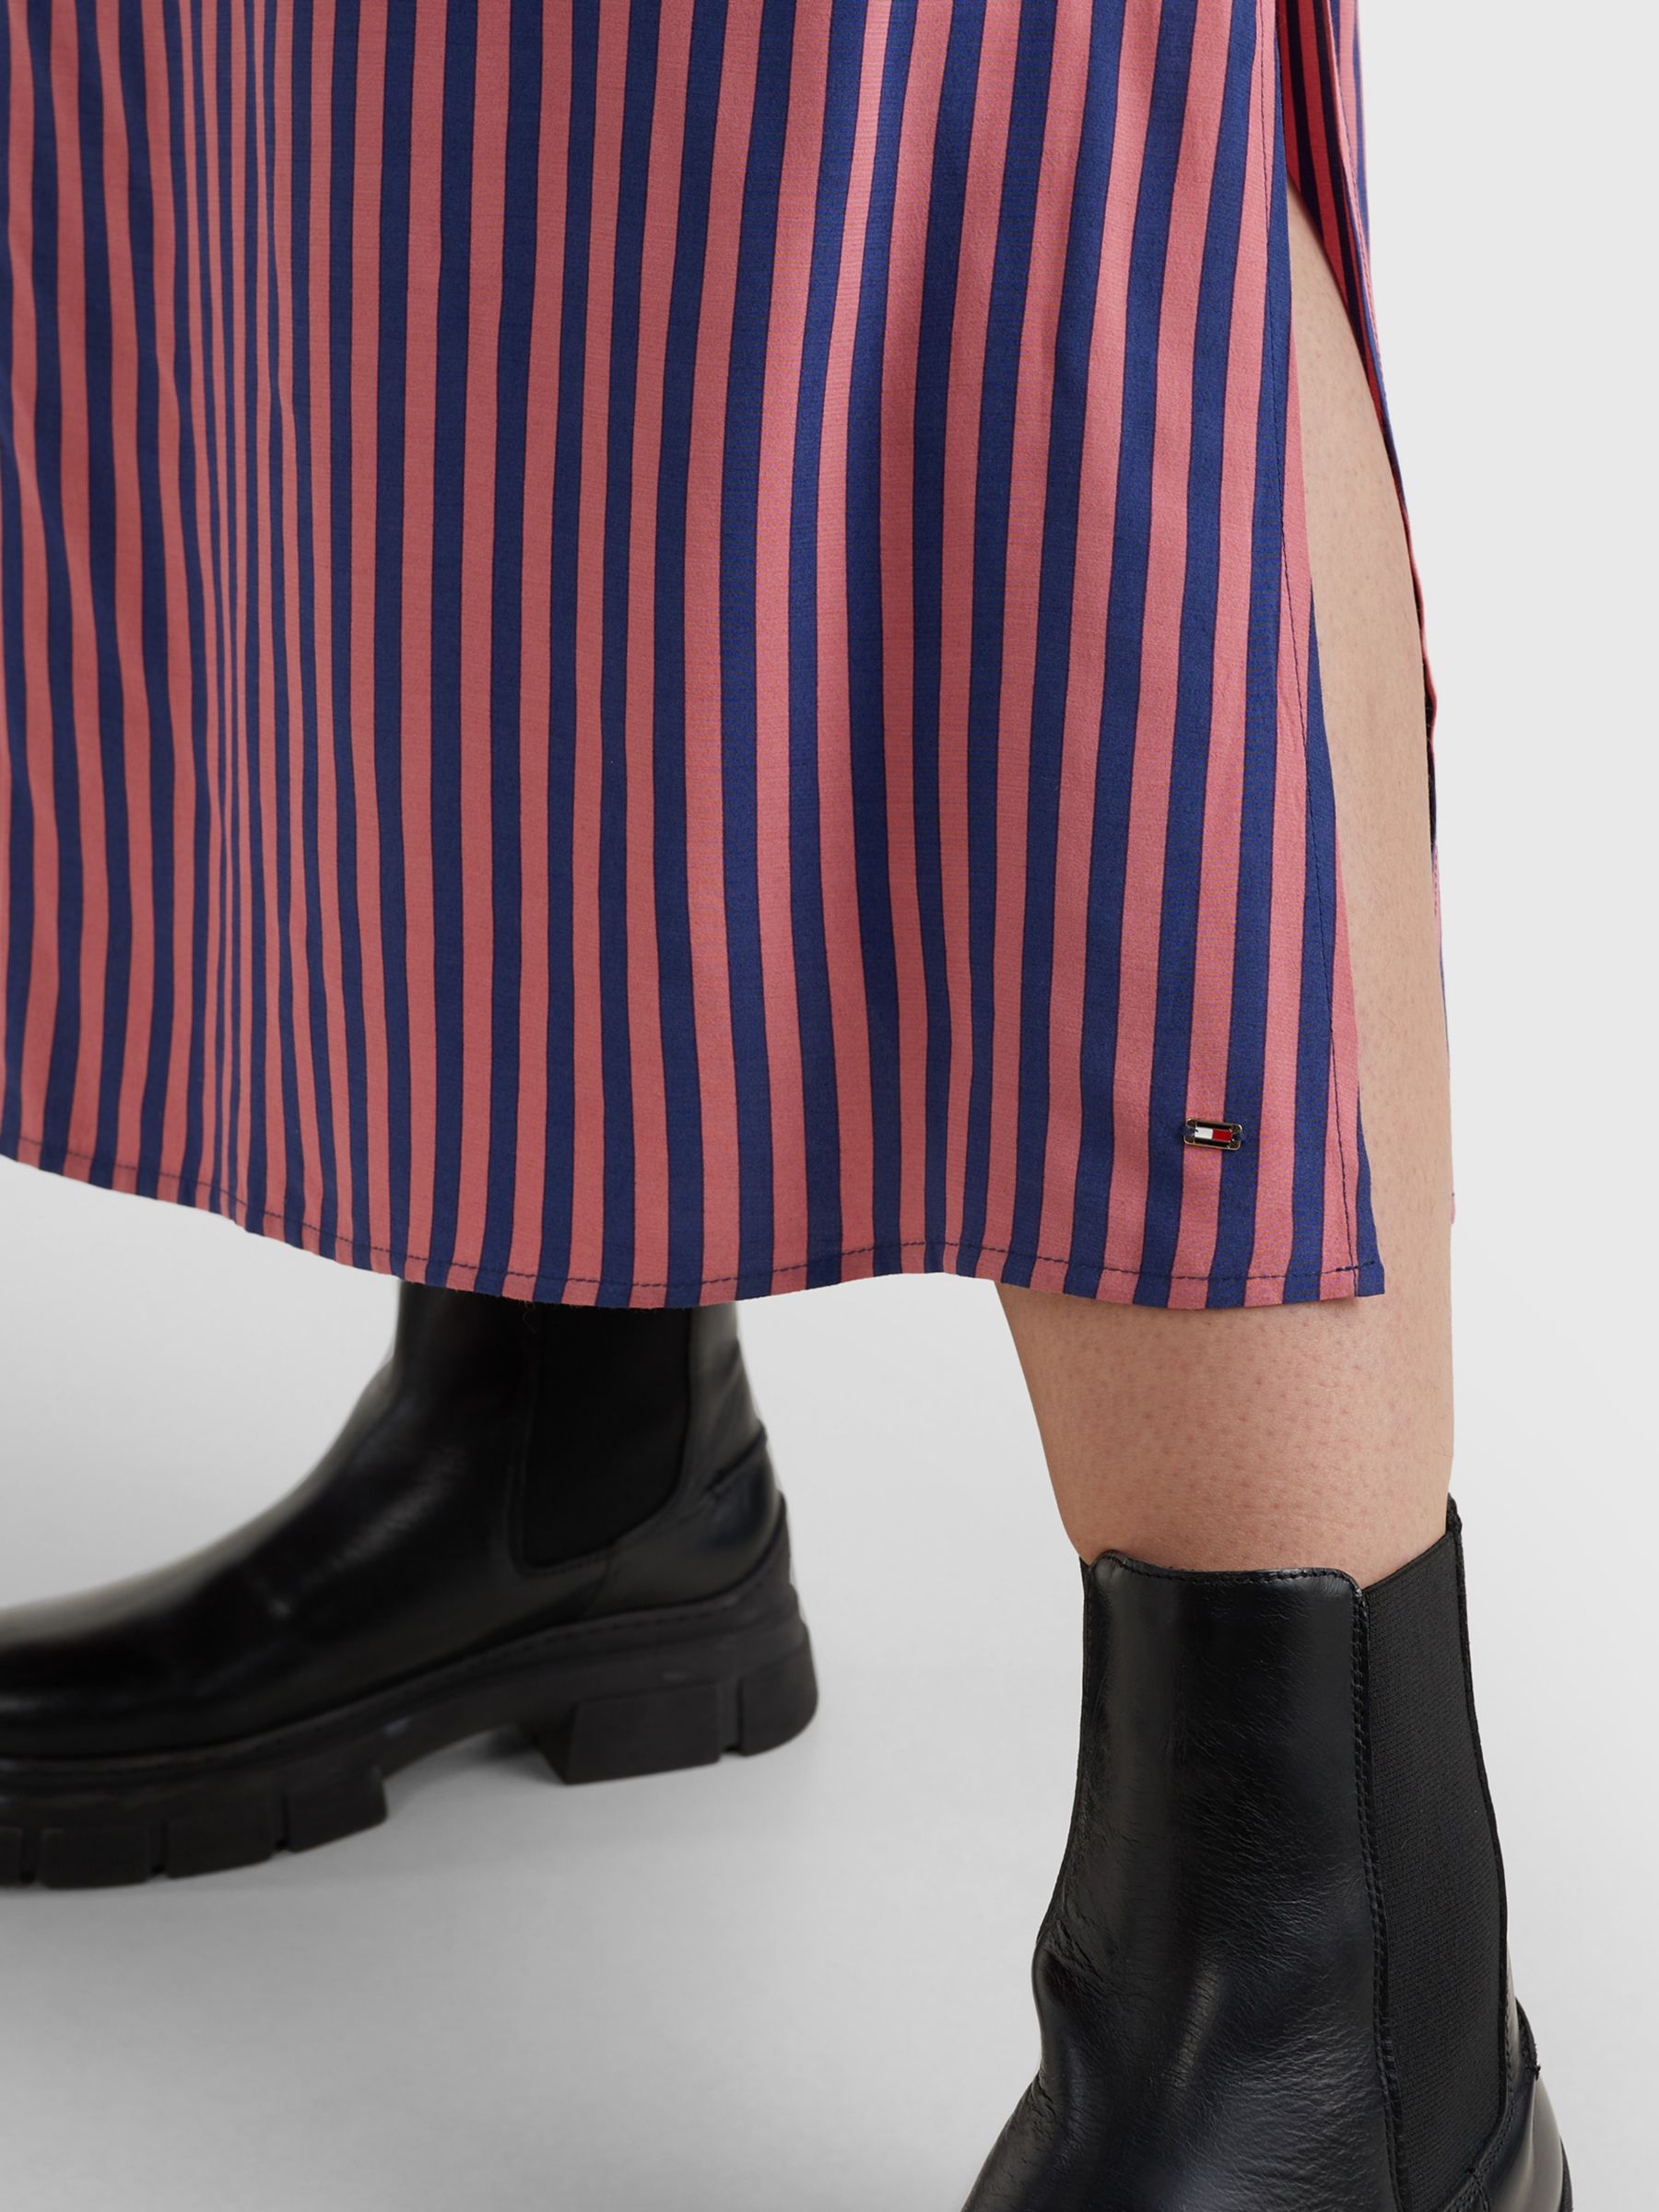 Tommy Hilfiger Curve Stripe Maxi Shirt Dress, Multi, 46